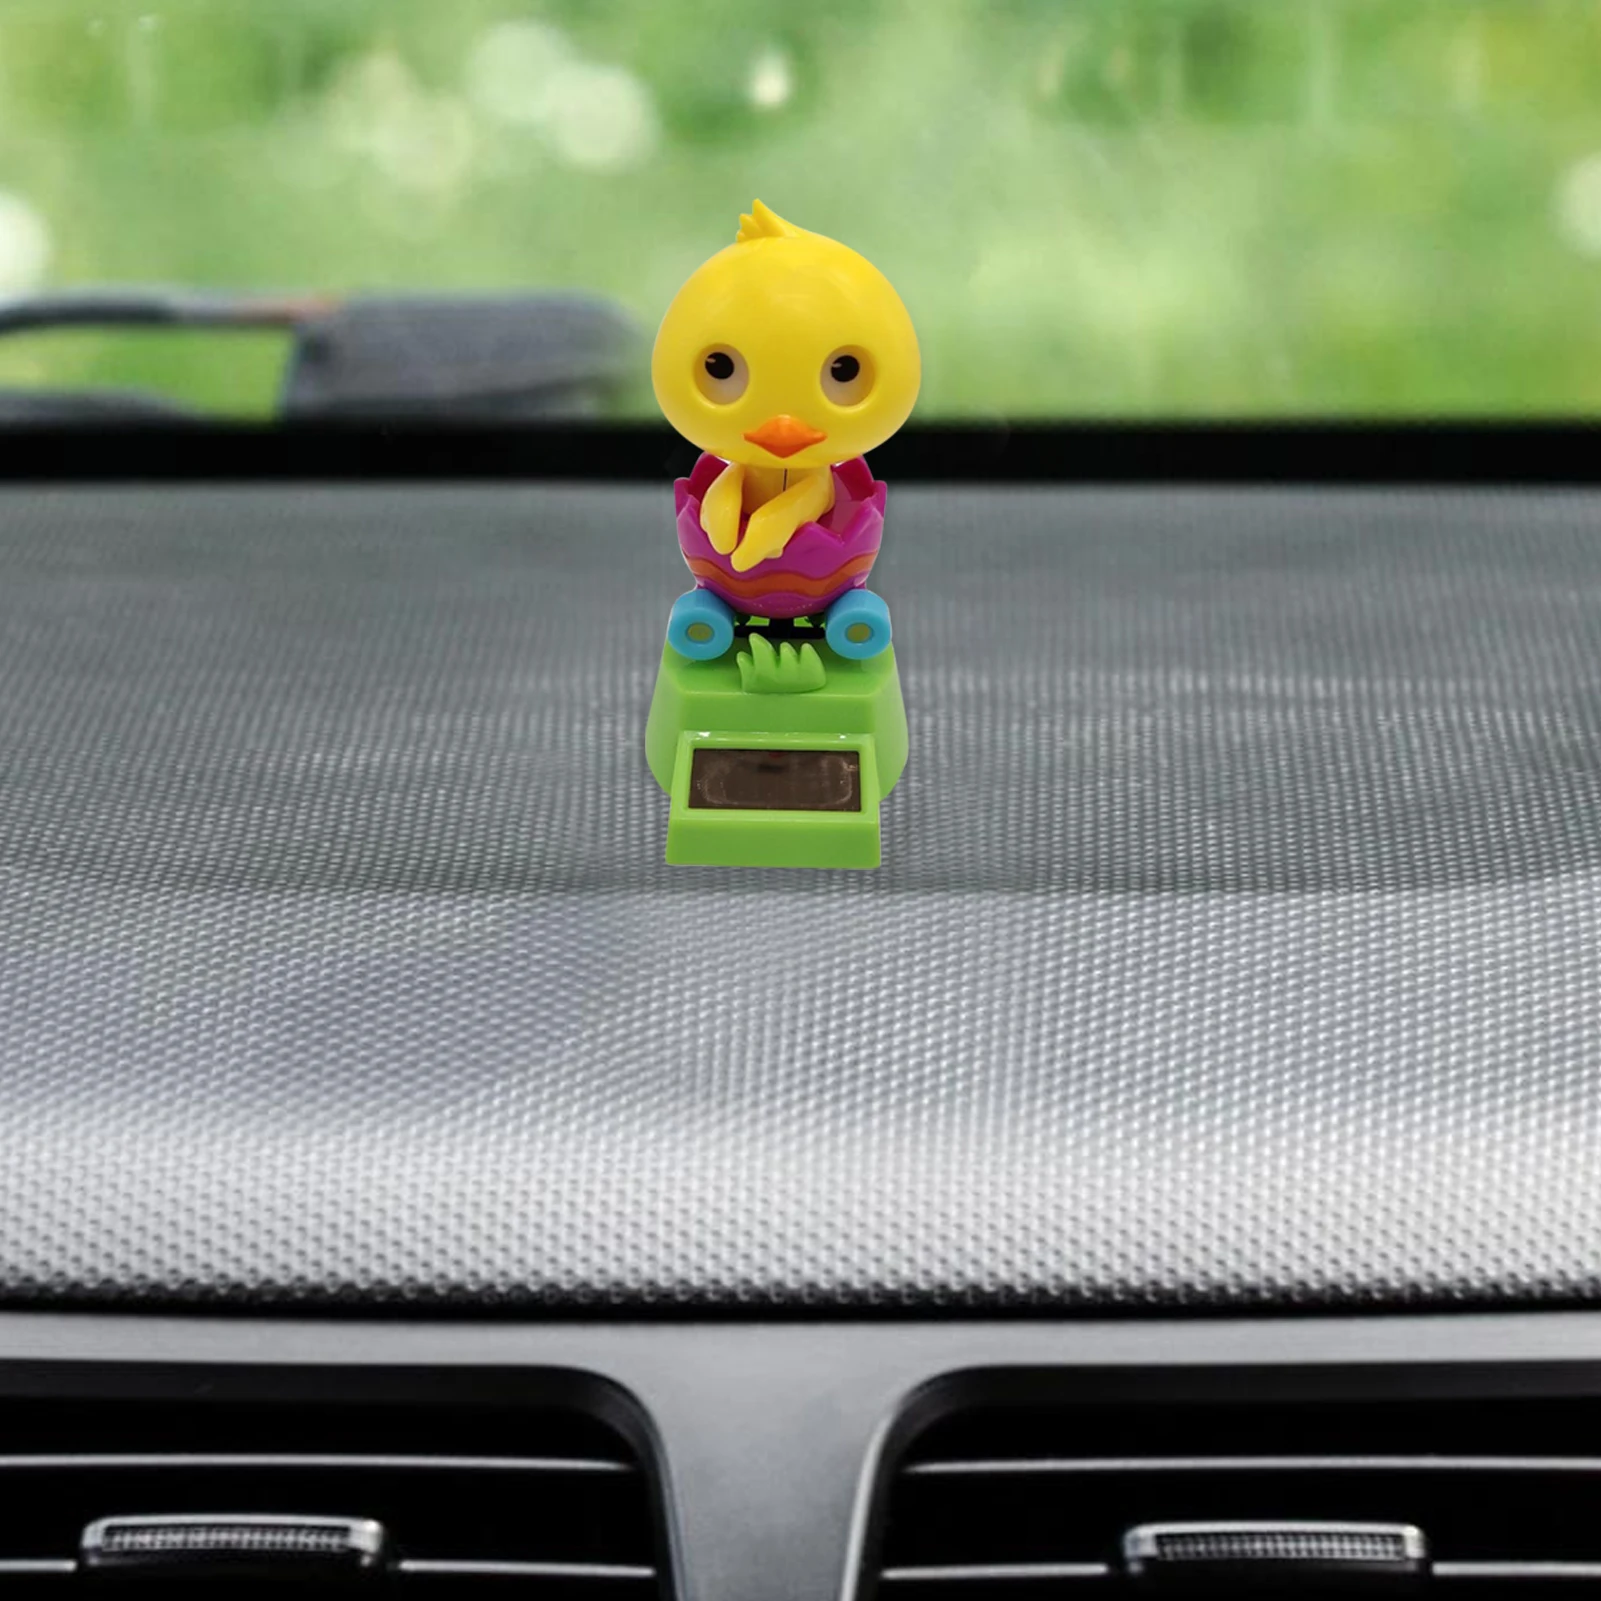 

Украшение для автомобиля с вибрирующей головкой, качающиеся анимированные танцевальные куклы на солнечной батарее с вибрирующей головкой ...